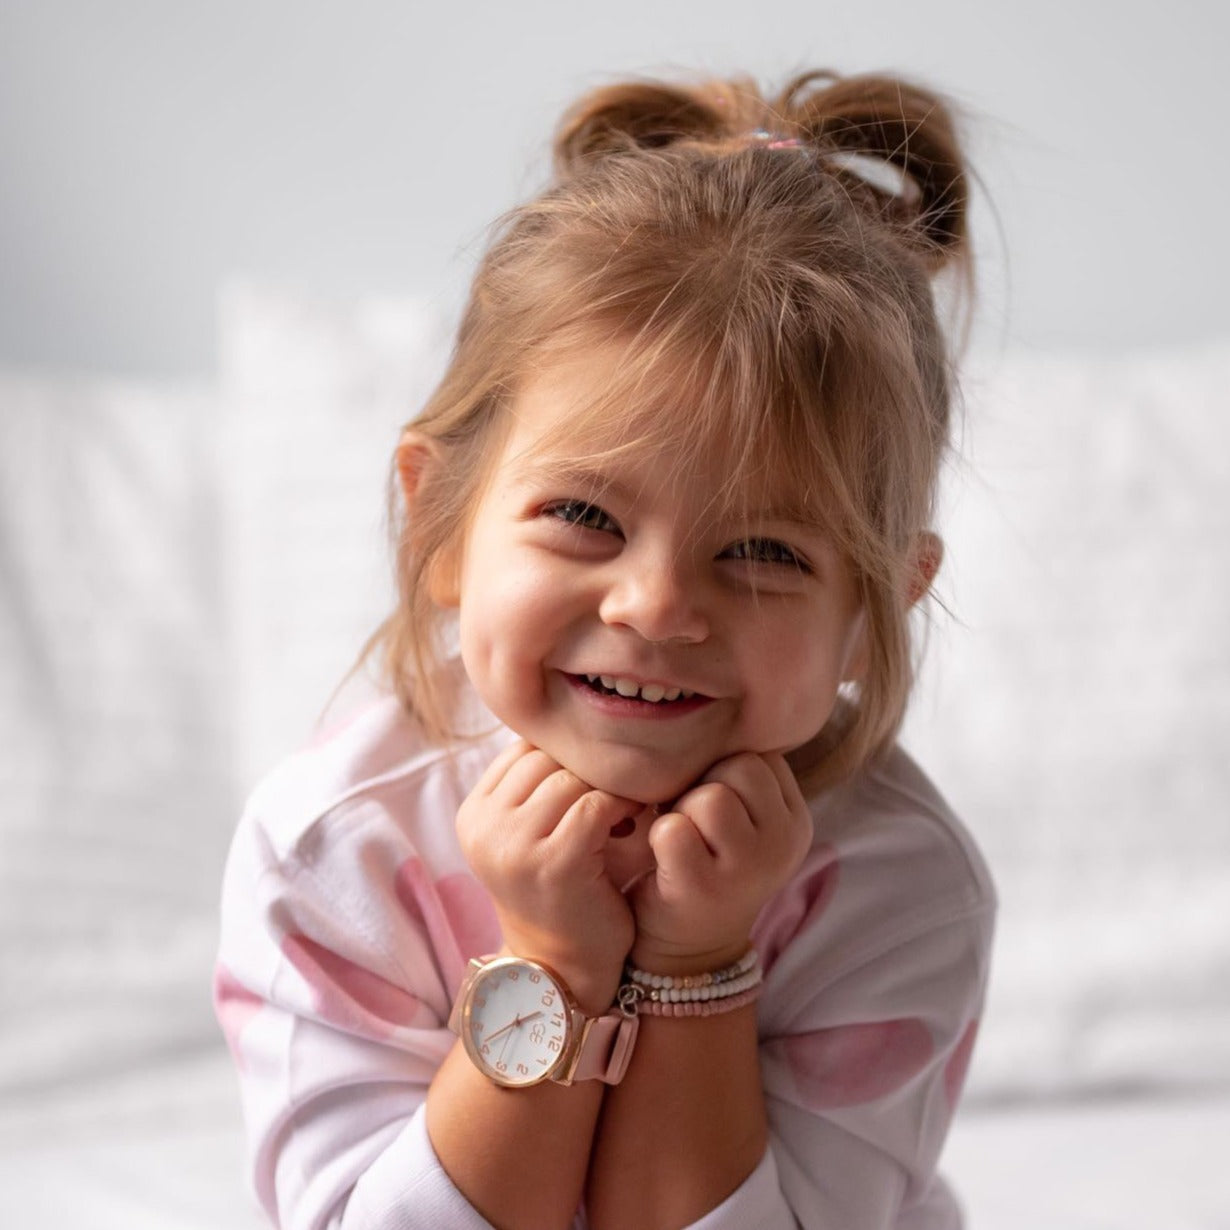 Phone Alternative for Tweens? Best Smartwatch for Tweens + Kids!